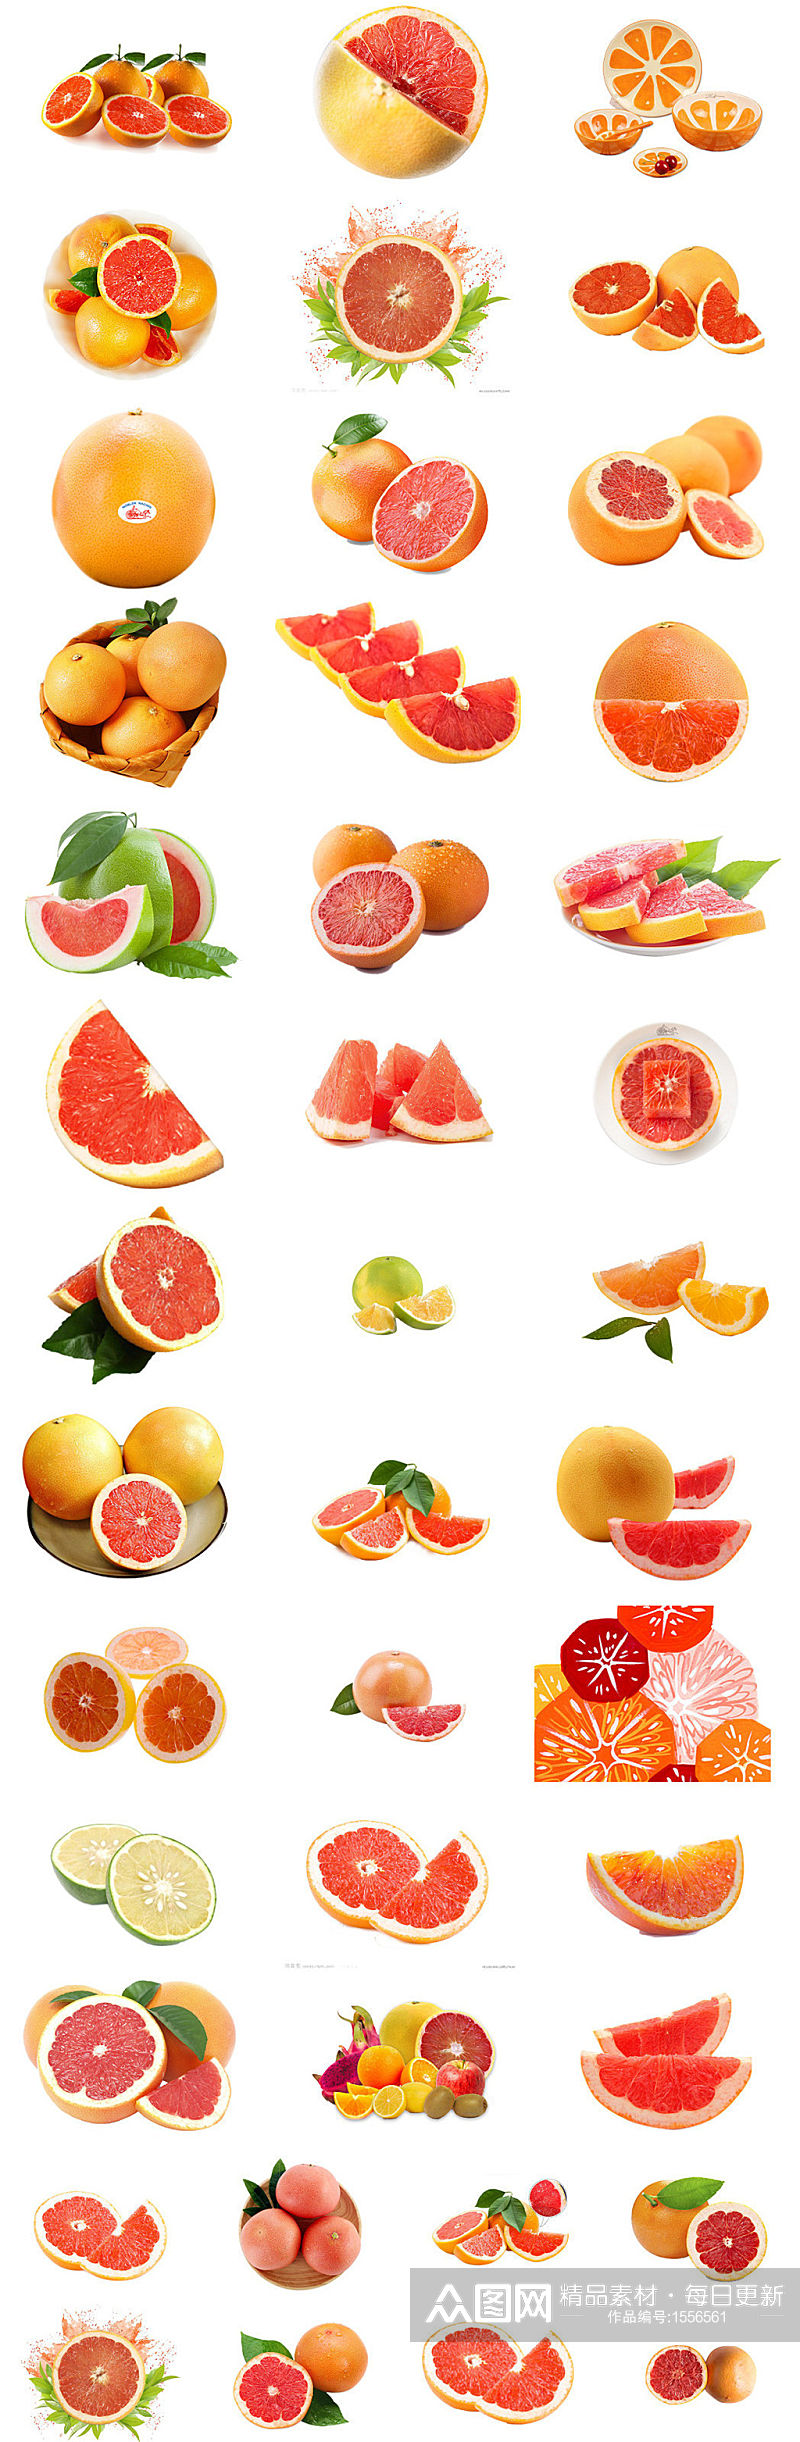 葡萄柚海报设计素材素材